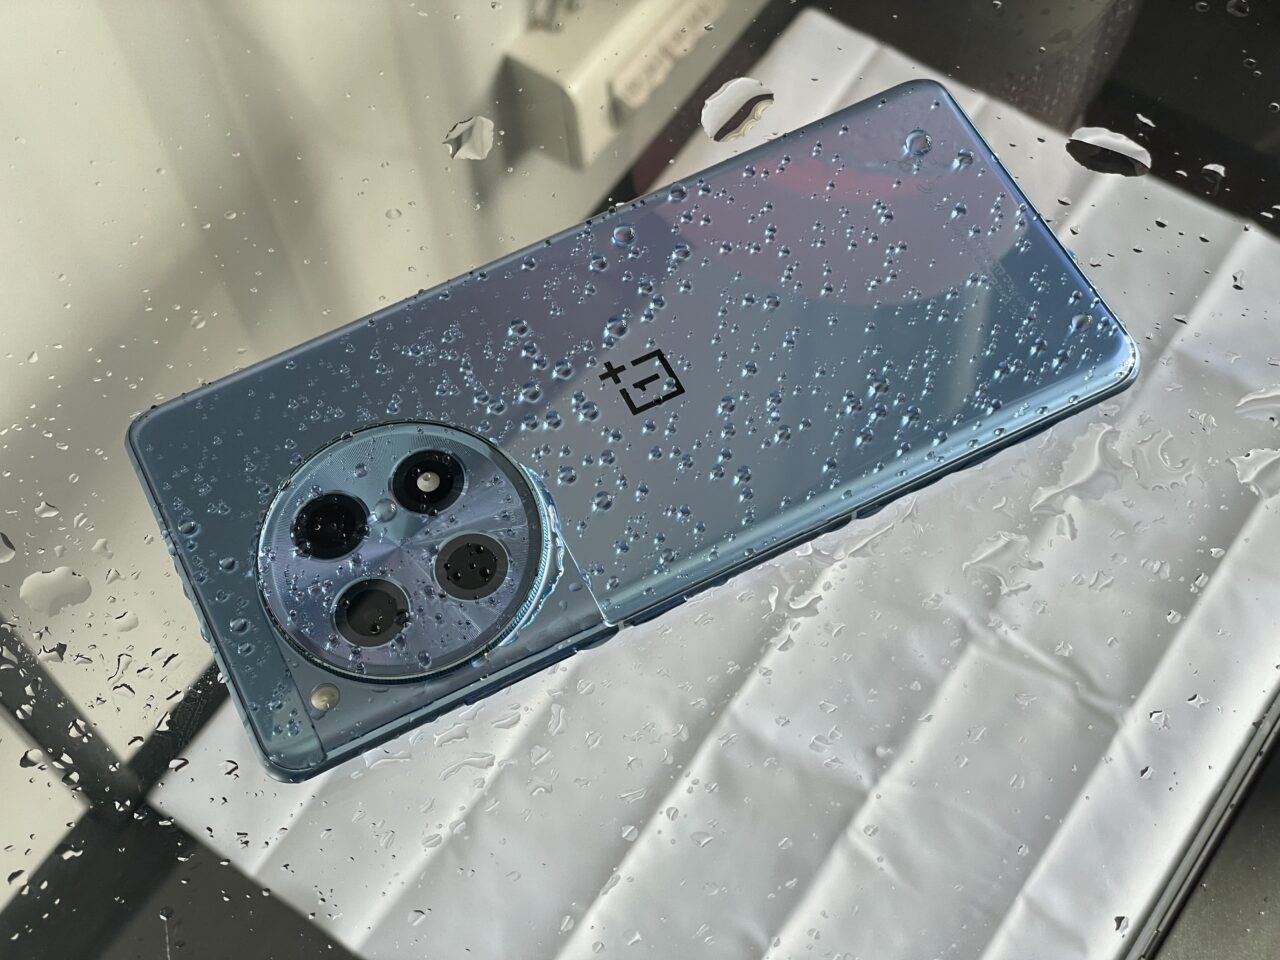 Niebieski smartfon z potrójnym aparatem leży na mokrej, błyszczącej powierzchni z kroplami wody.